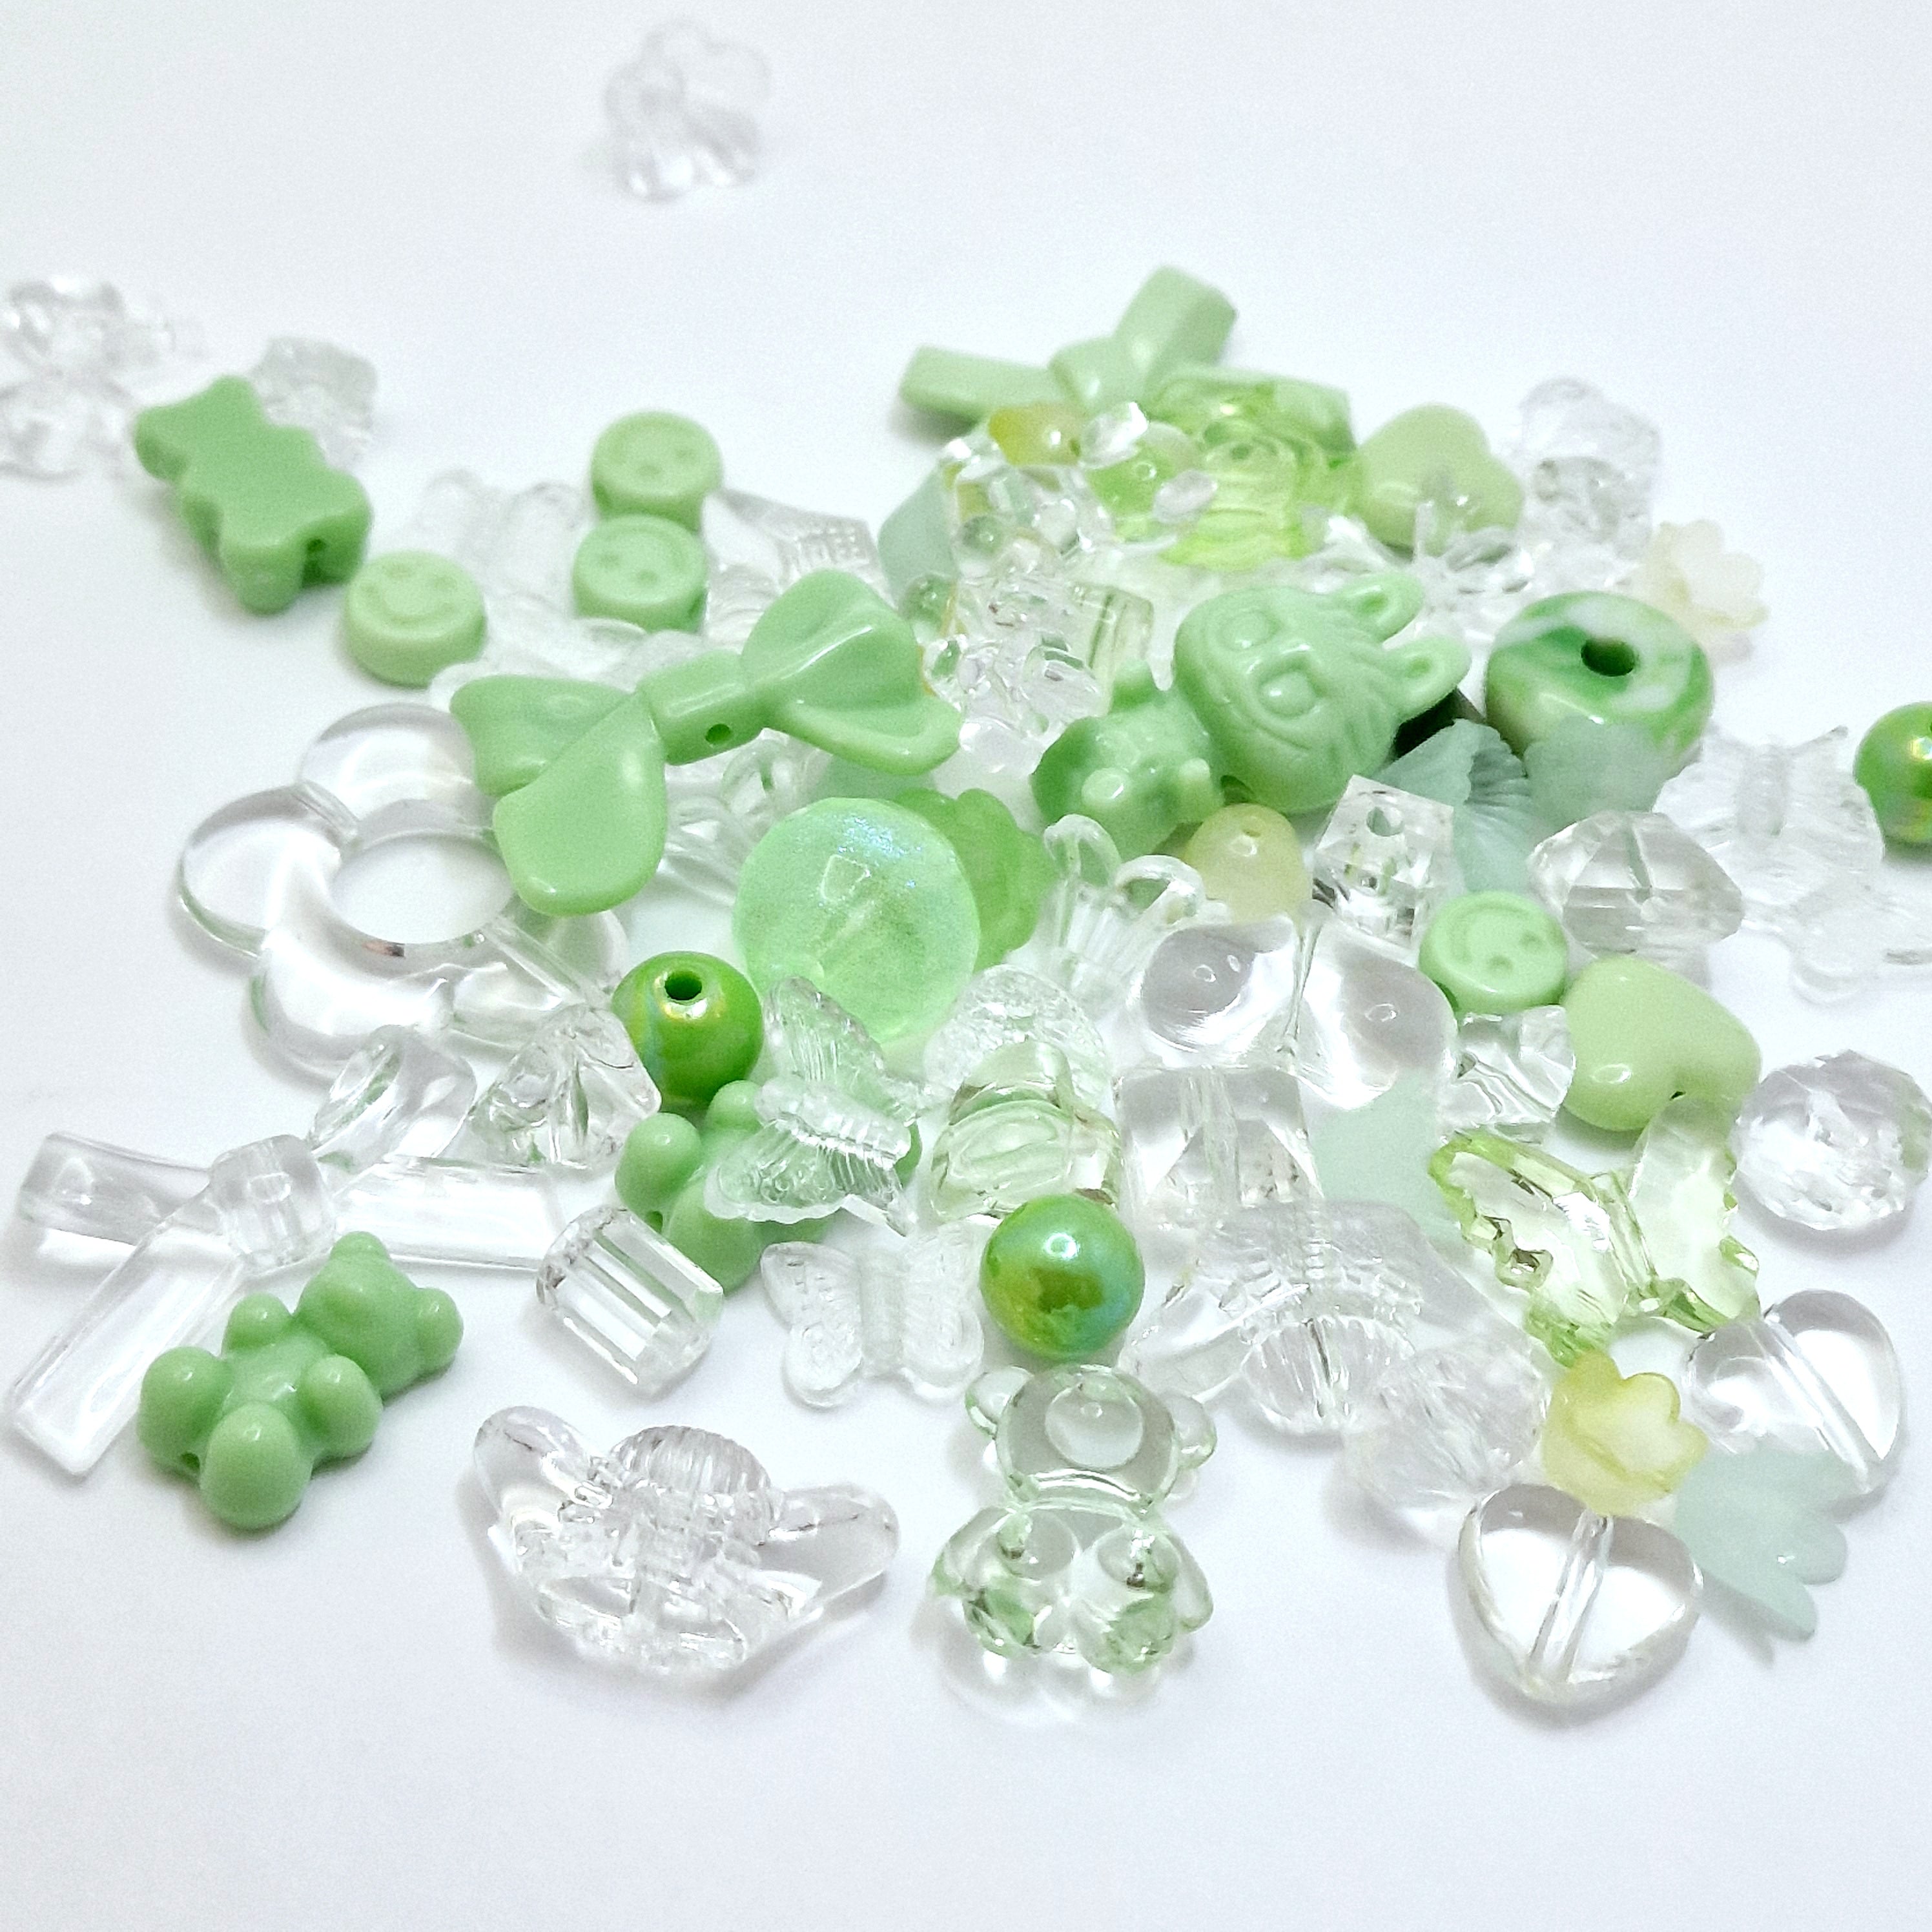 MajorCrafts 50g Green Theme Mixed Shapes & Sizes Acrylic Beads